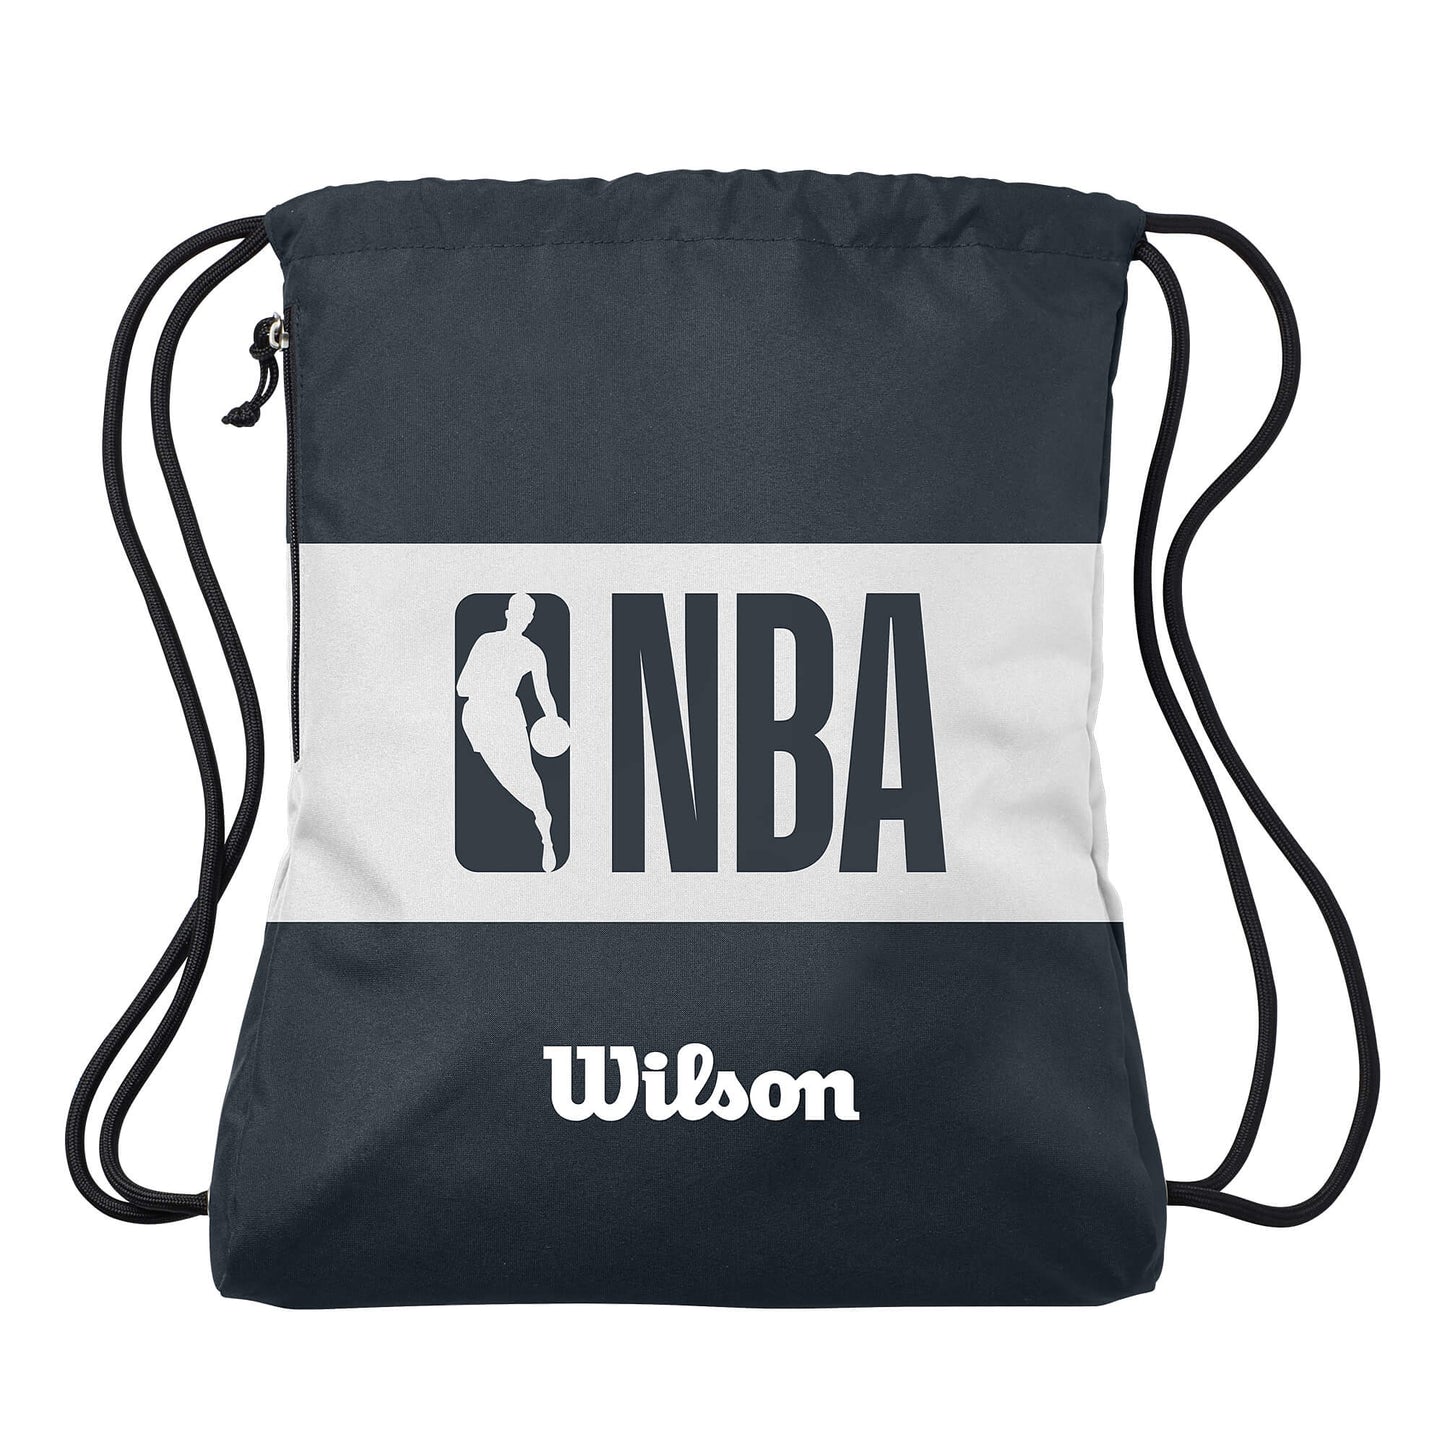 Wilson NBA Forge Basketball Bag Black